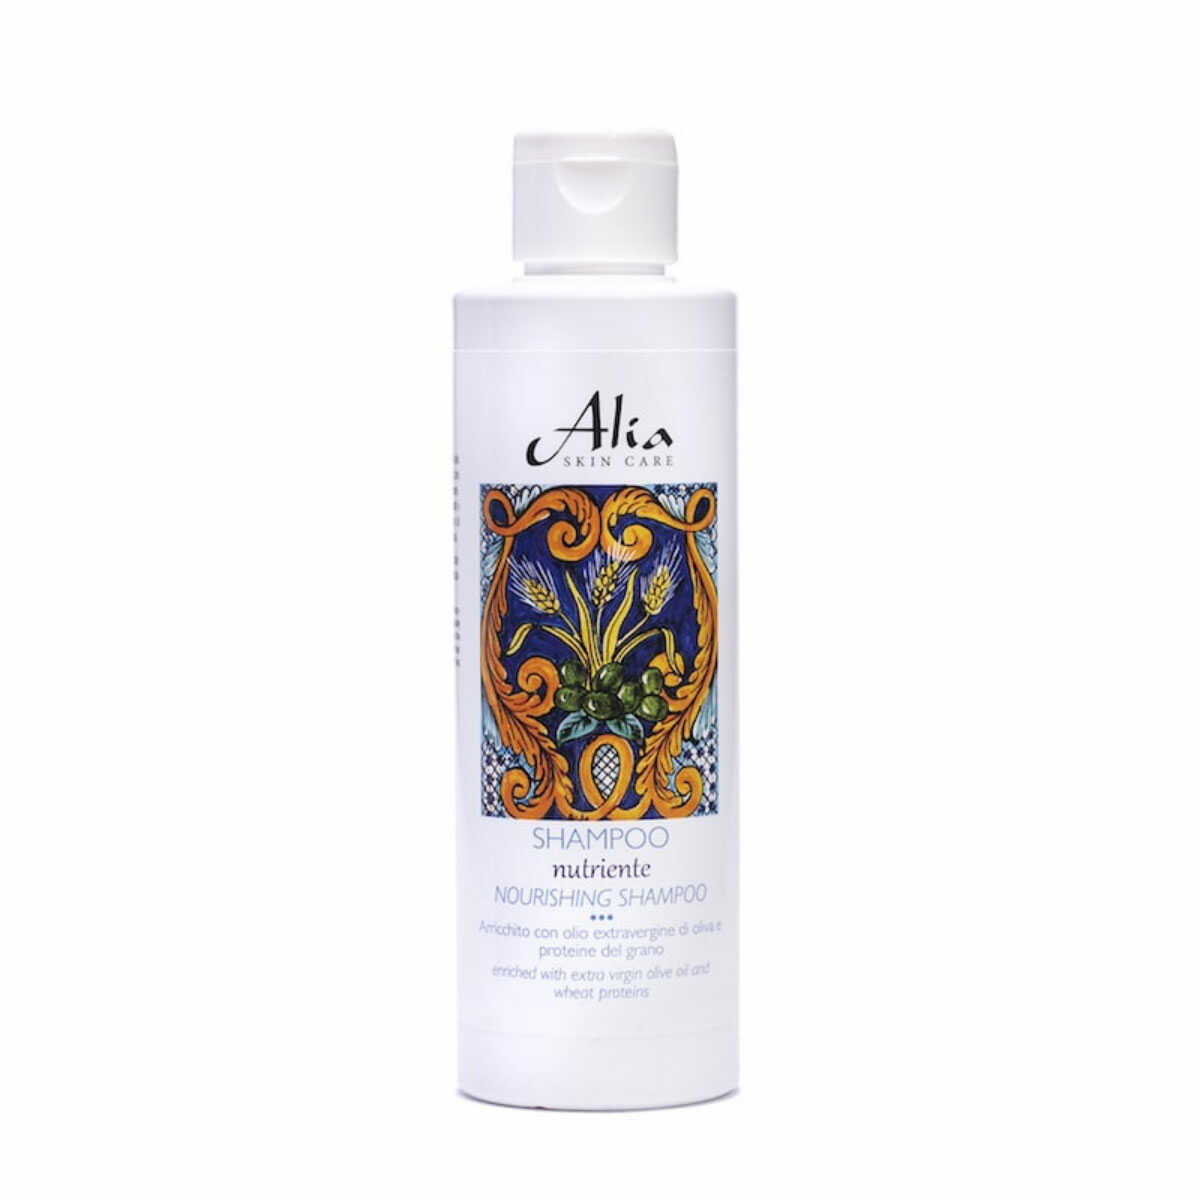 Alia Skin Care - Voedende Shampoo met tarweproteïne, calendula 200ml